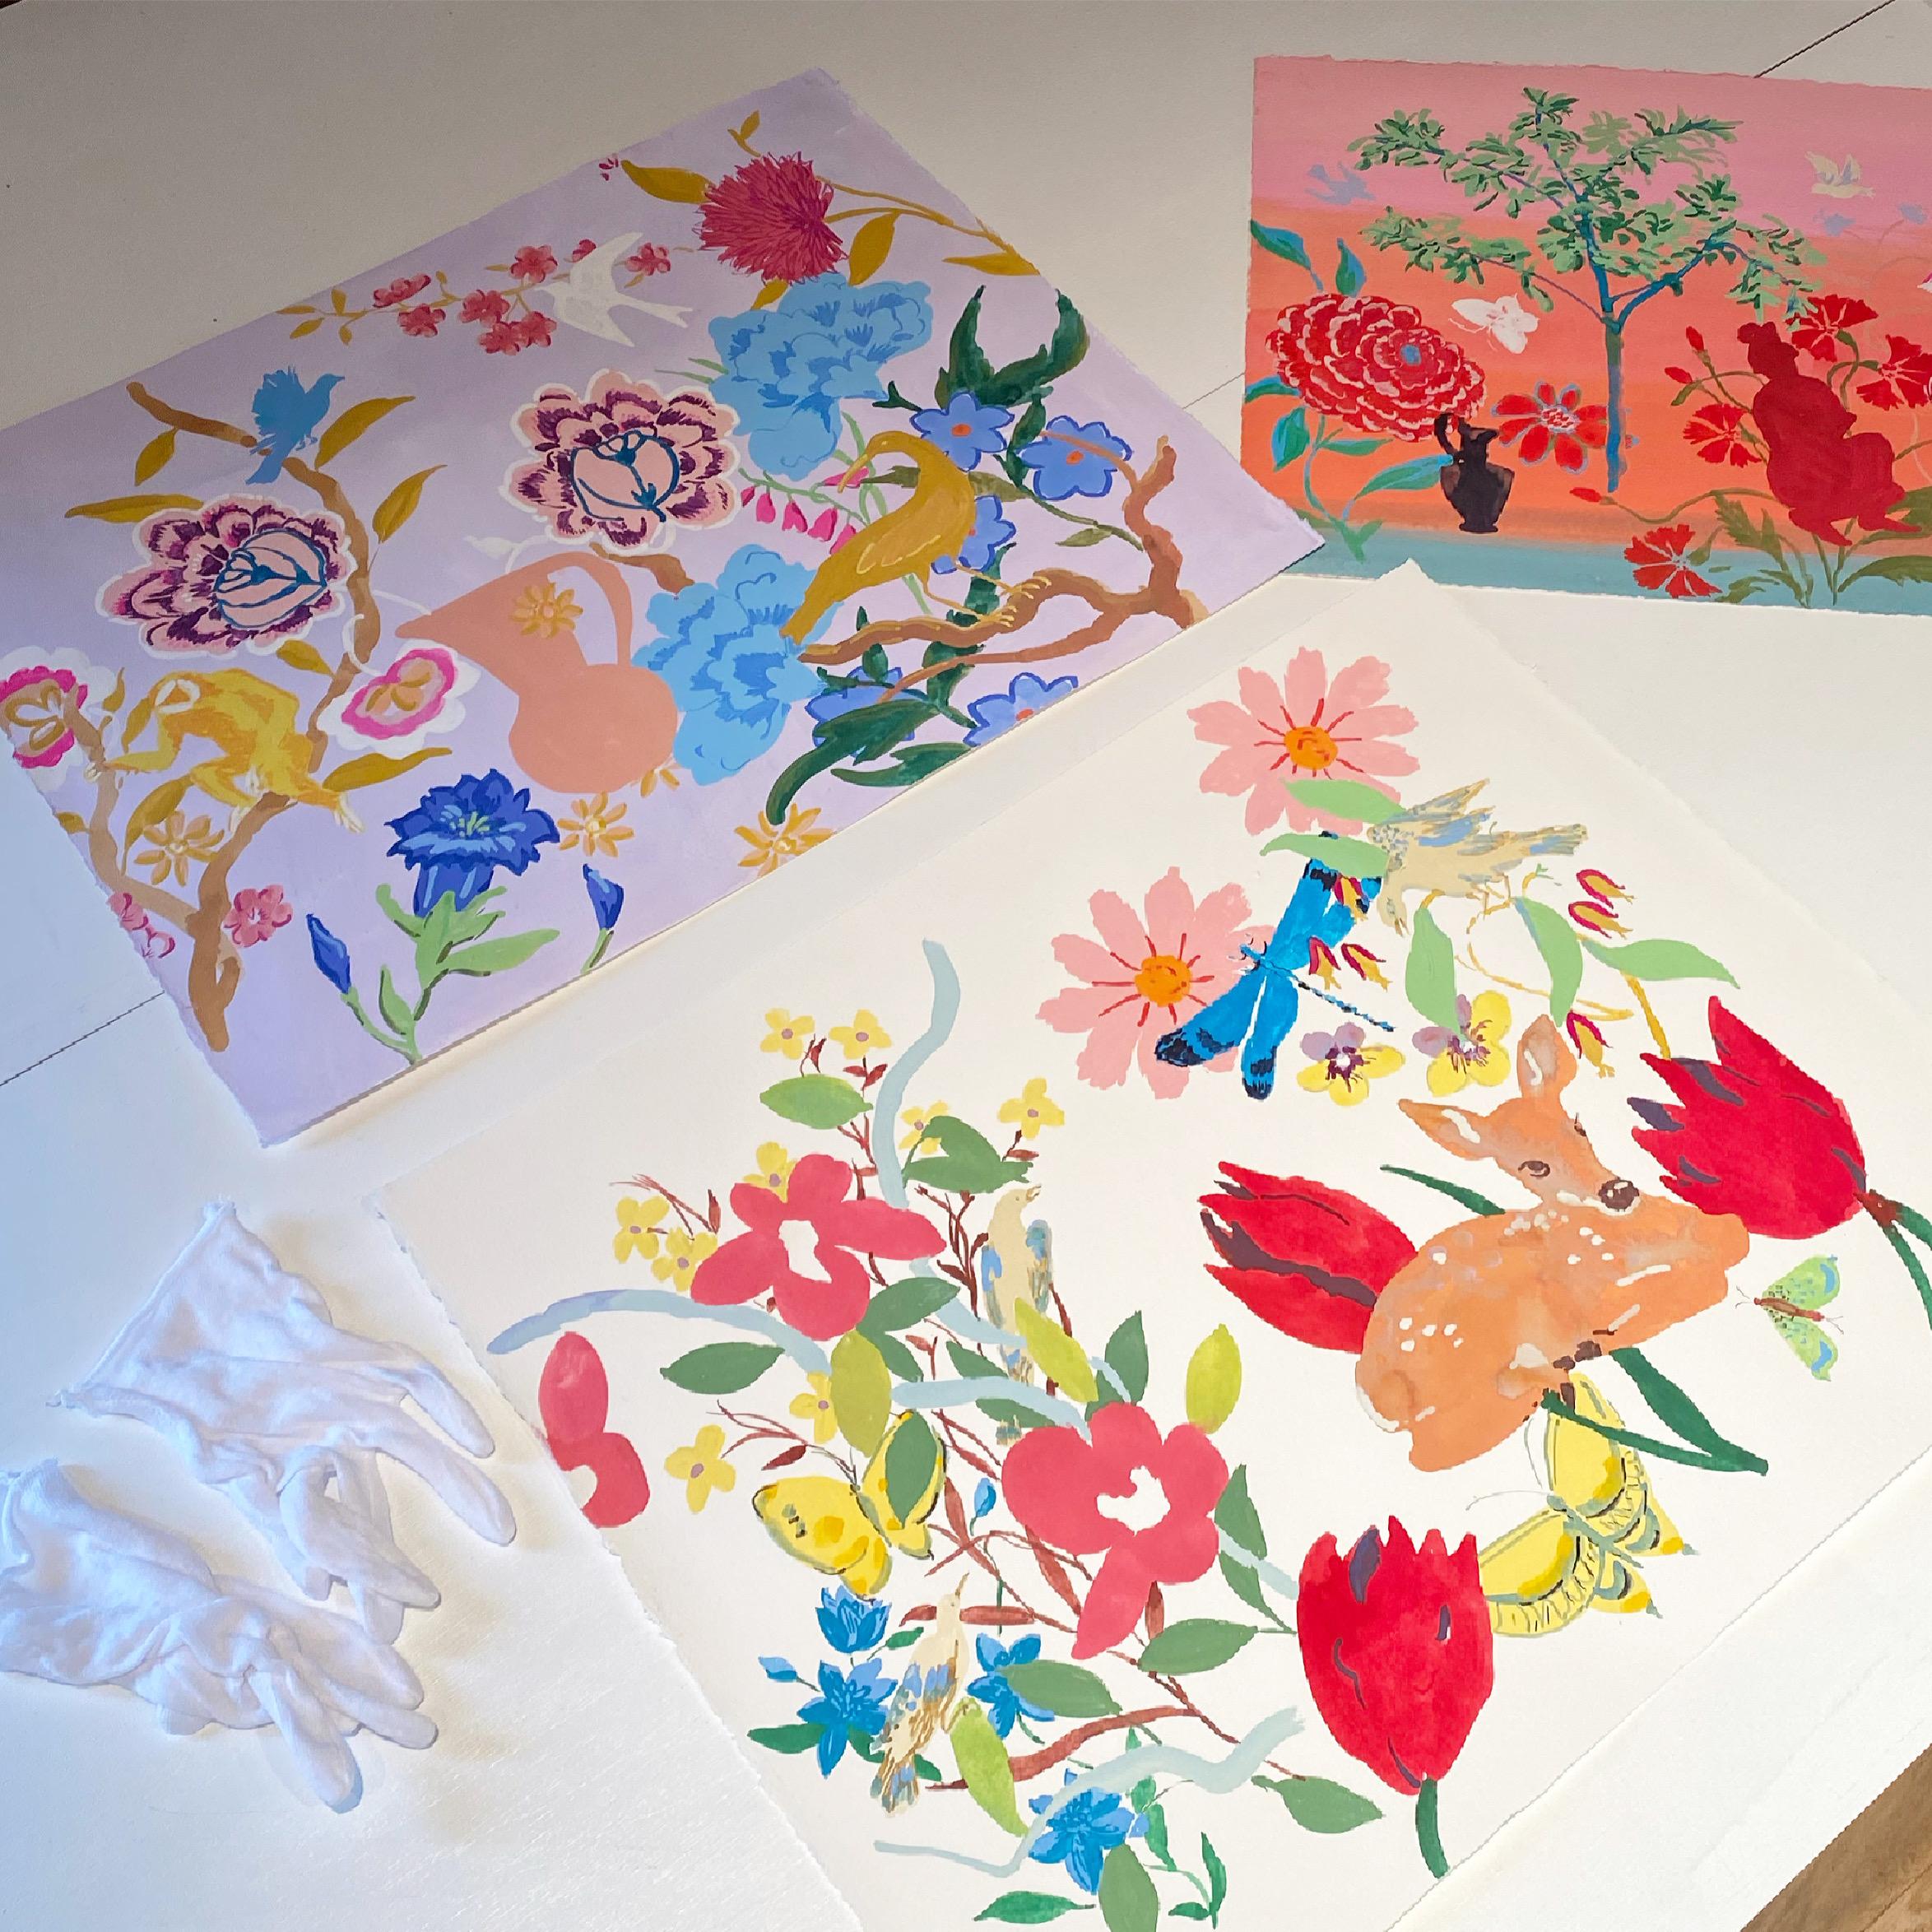 Bleu Ambre, Jaune, Rose, Peinture botanique, Fleurs, Oiseaux, Singe, Jardin - Painting de Melanie Parke